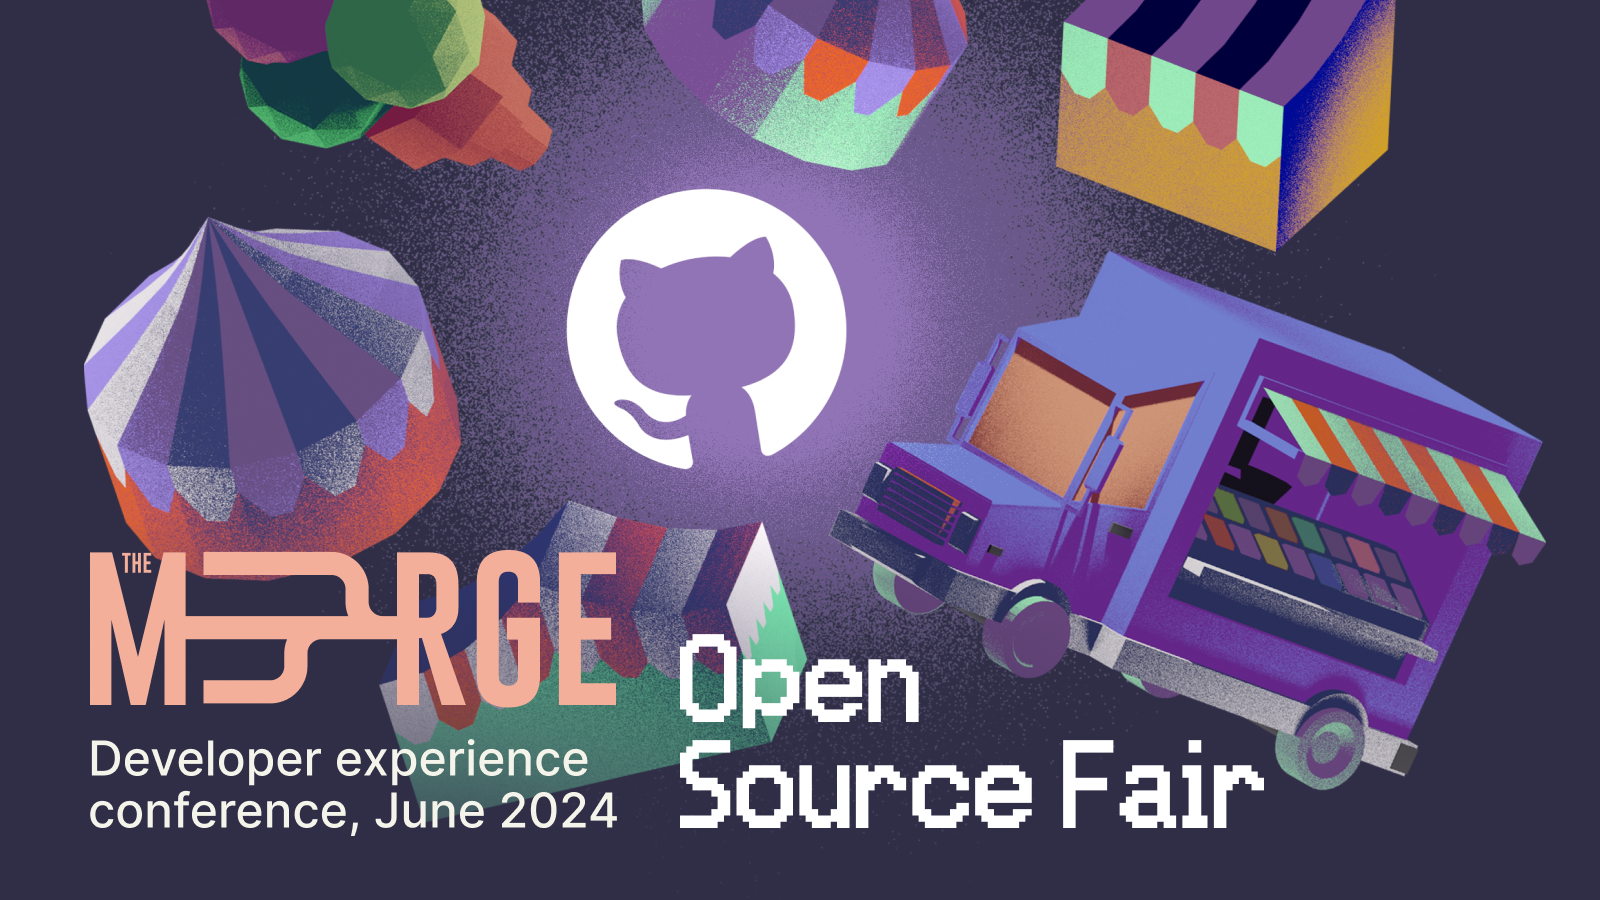 OpenSource Fair